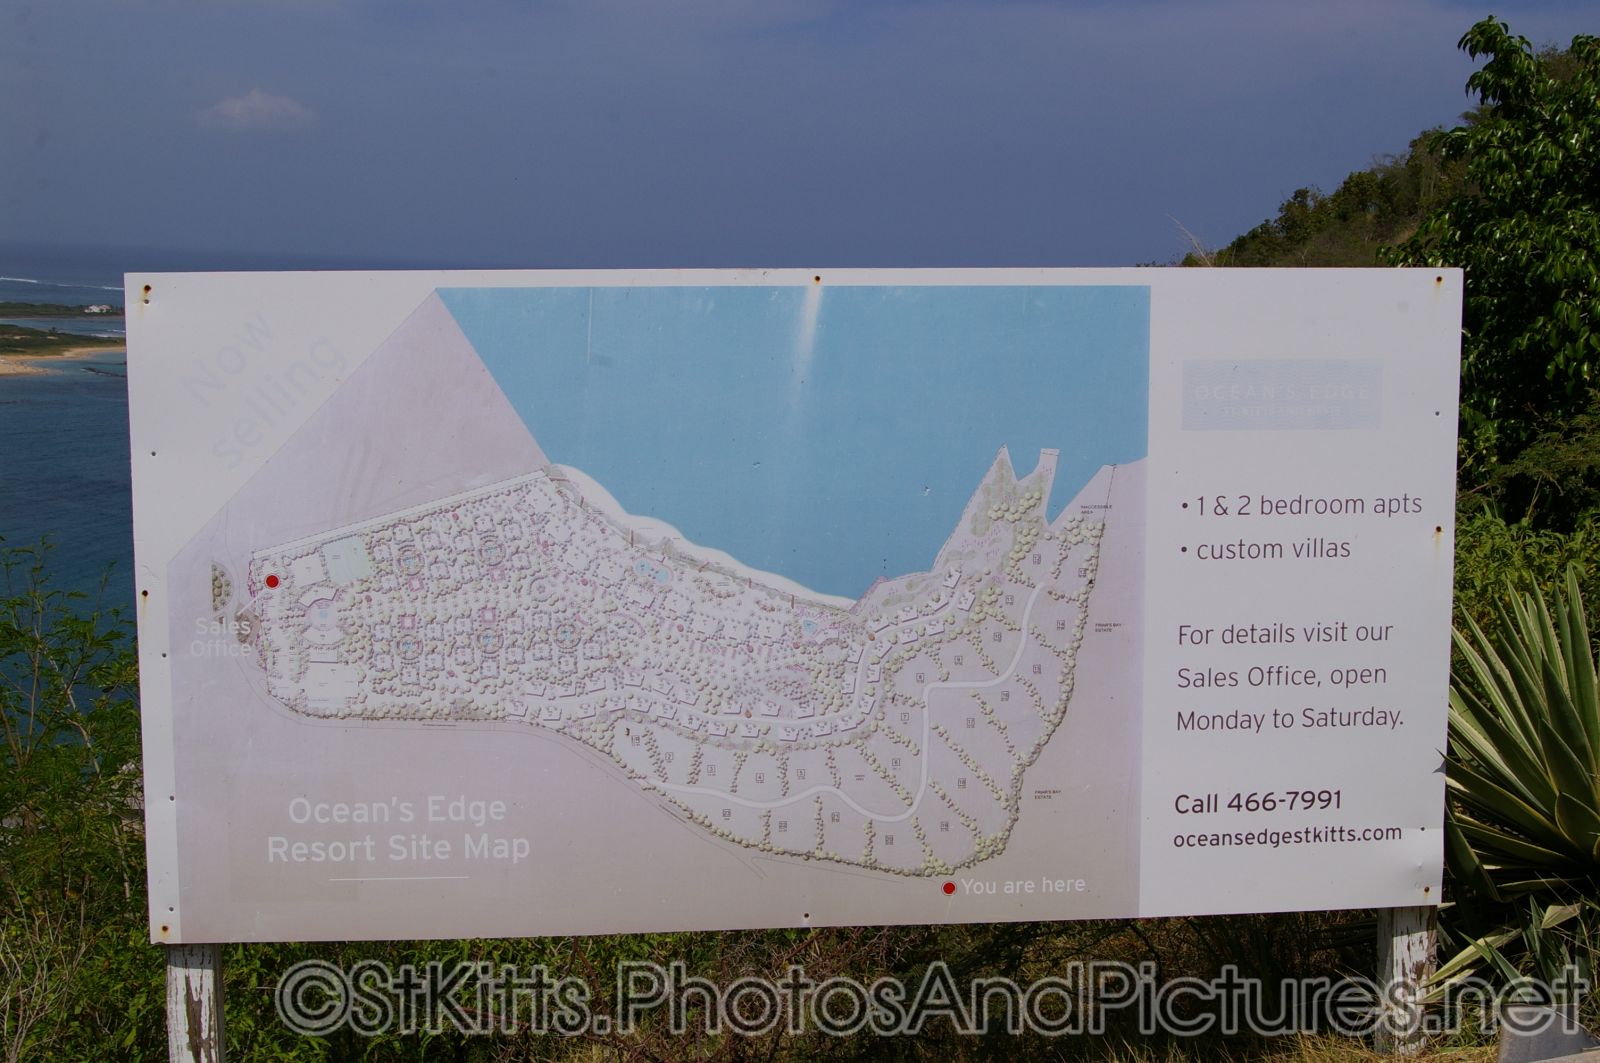 Ocean's Edge Resort Site Map at St Kitts.jpg
